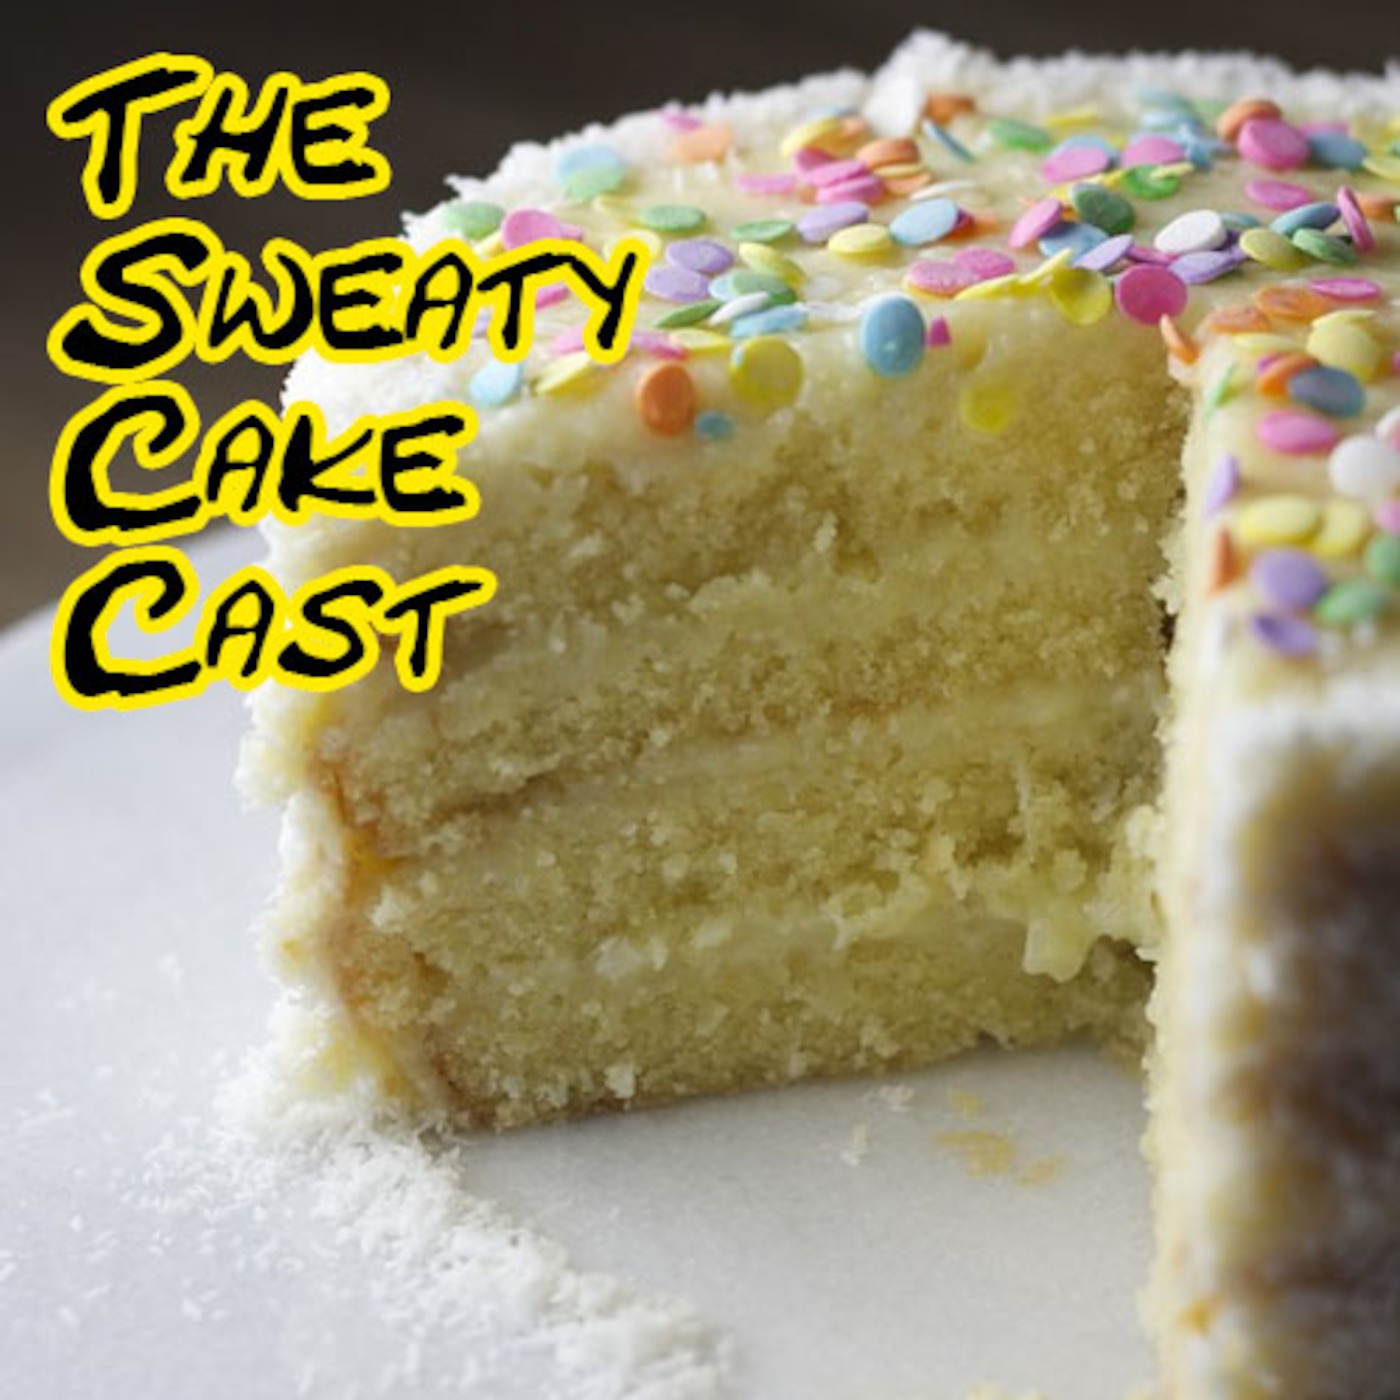 Sweaty Cake Cast